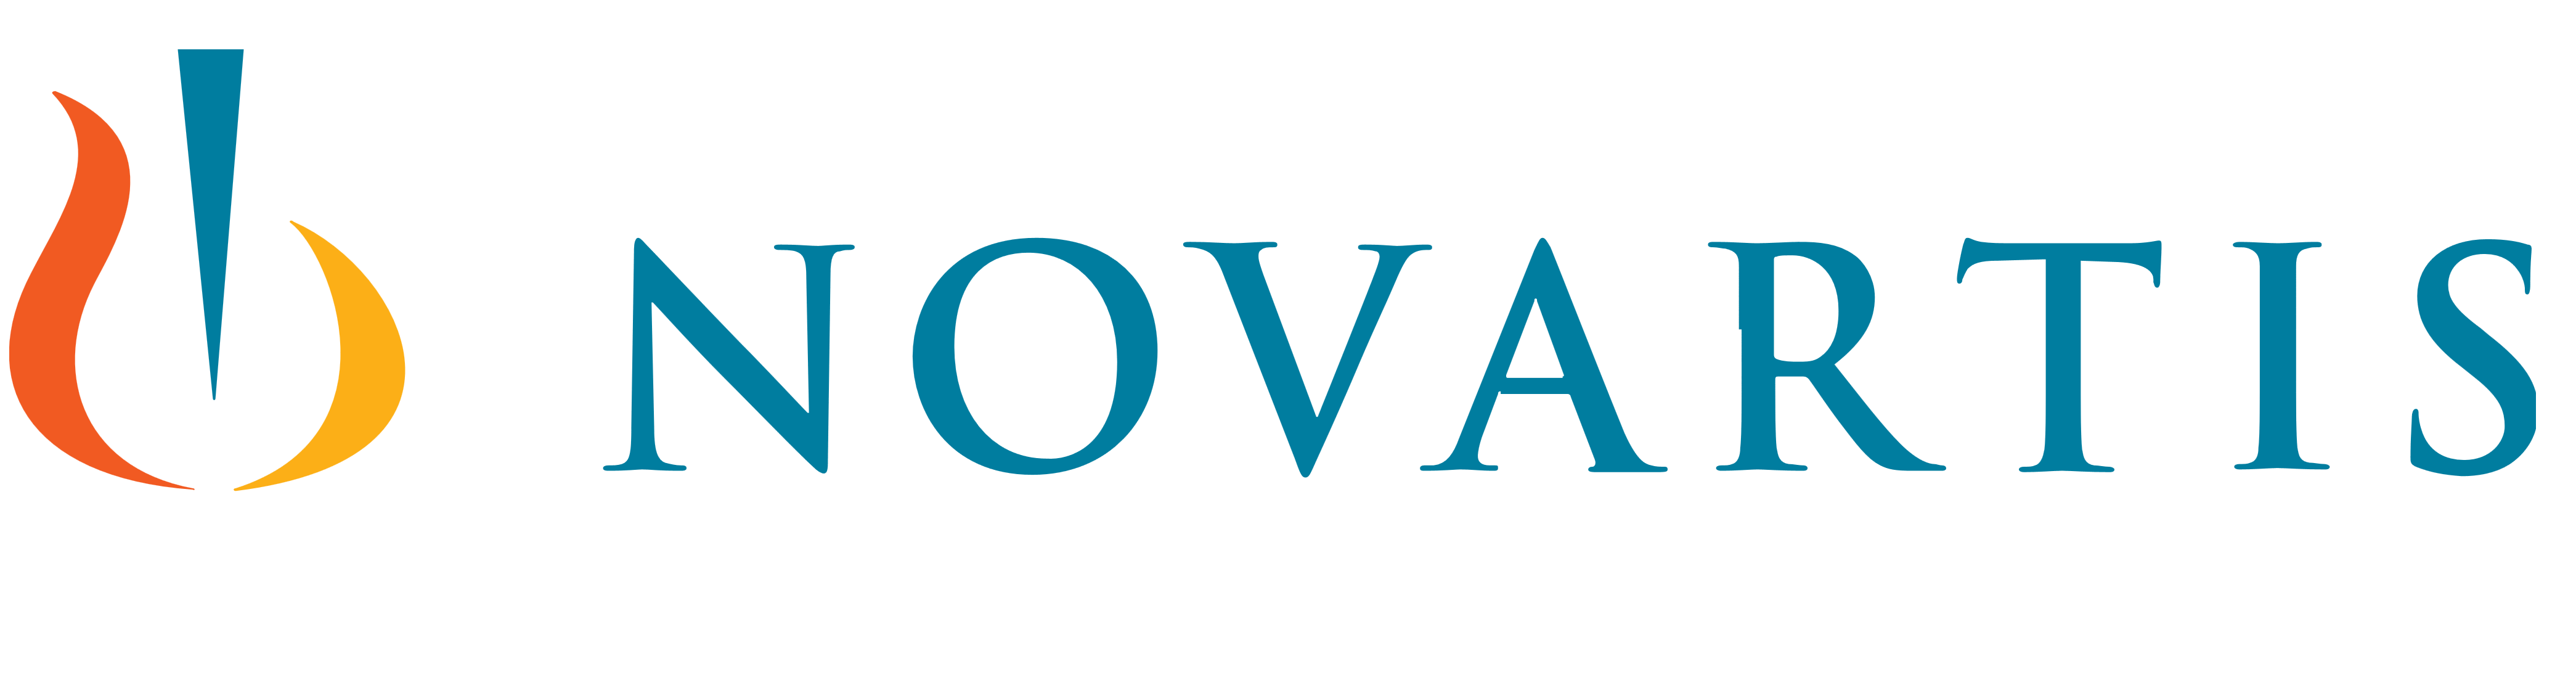 Novartis-1